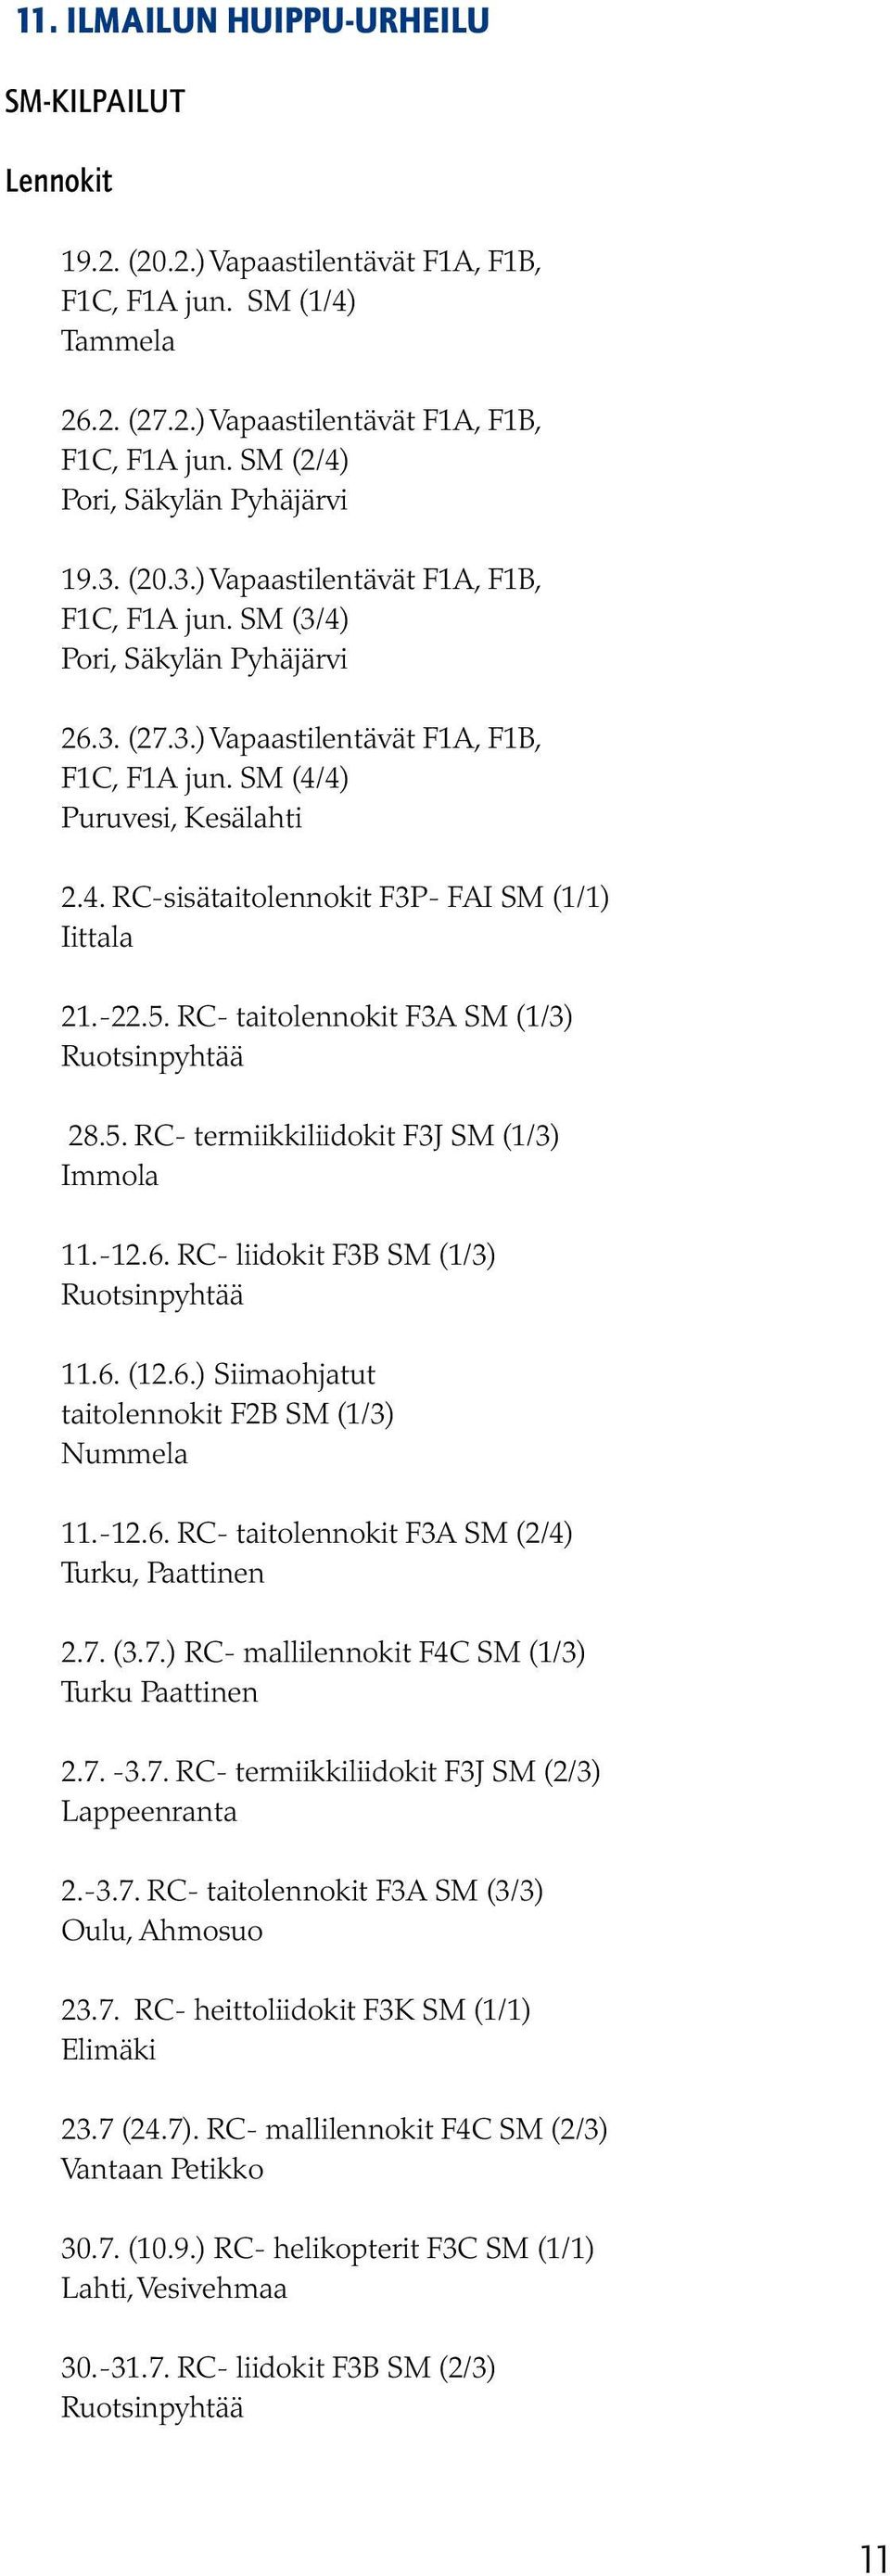 -22.5. RC- taitolennokit F3A SM (1/3) Ruotsinpyhtää 28.5. RC- termiikkiliidokit F3J SM (1/3) Immola 11.-12.6. RC- liidokit F3B SM (1/3) Ruotsinpyhtää 11.6. (12.6.) Siimaohjatut taitolennokit F2B SM (1/3) Nummela 11.